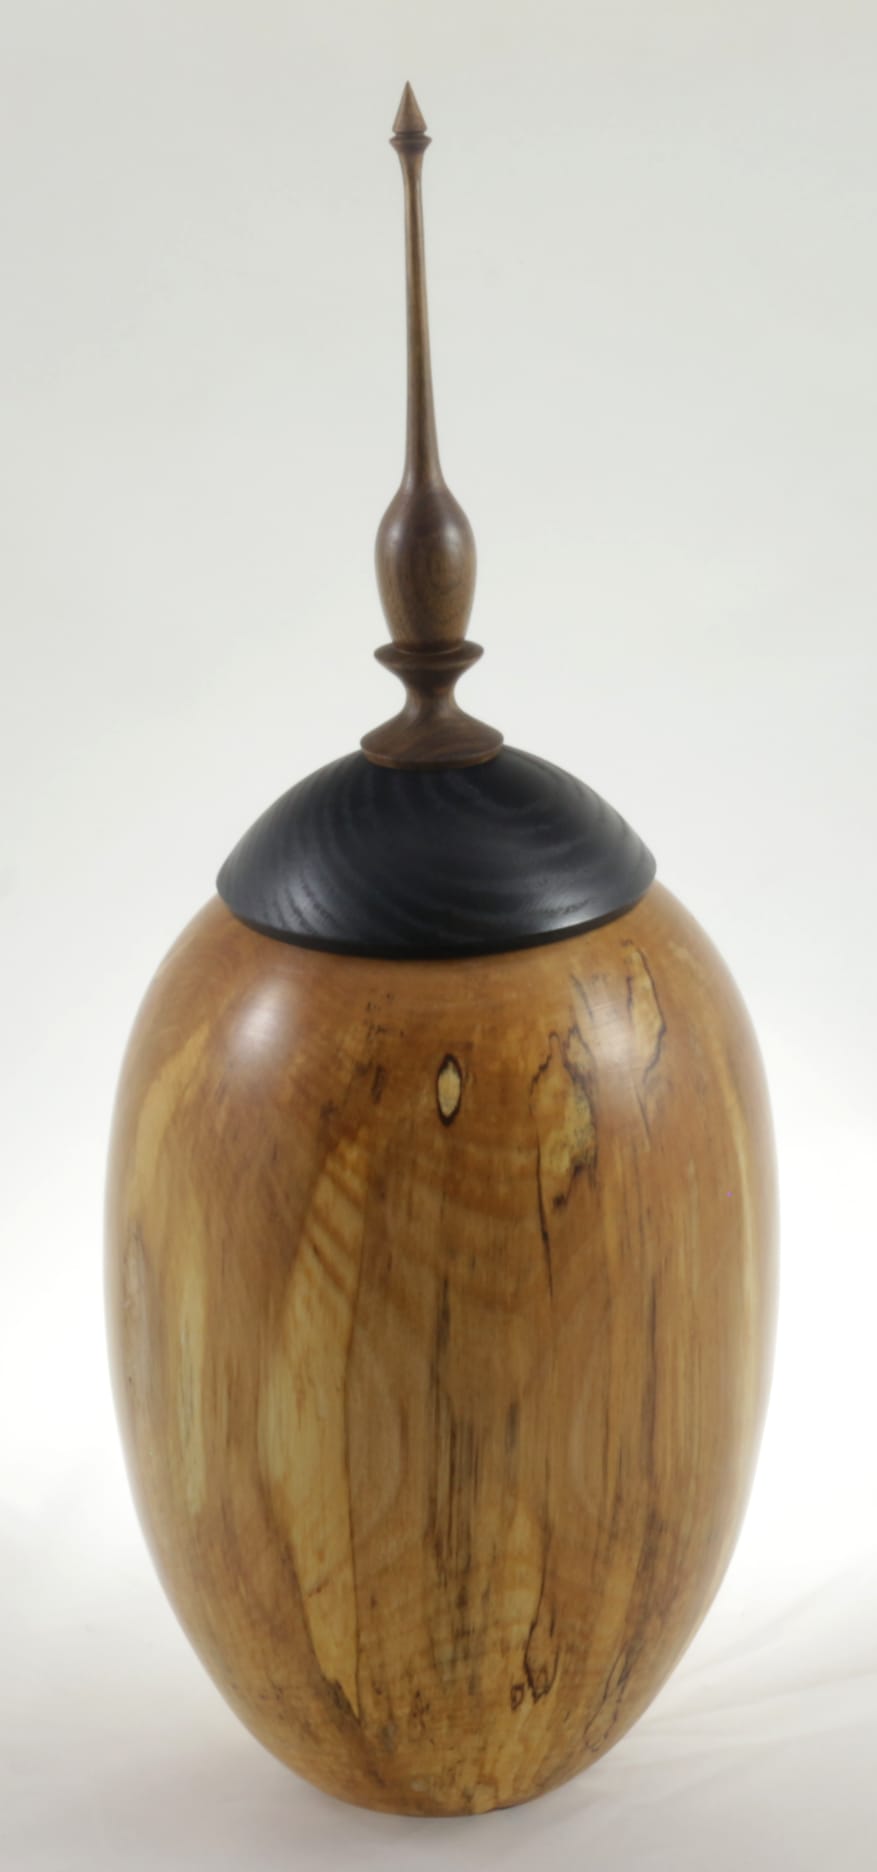 Wood cremation urn - #116-Spalted White Birch 7.5 x 17.5in.